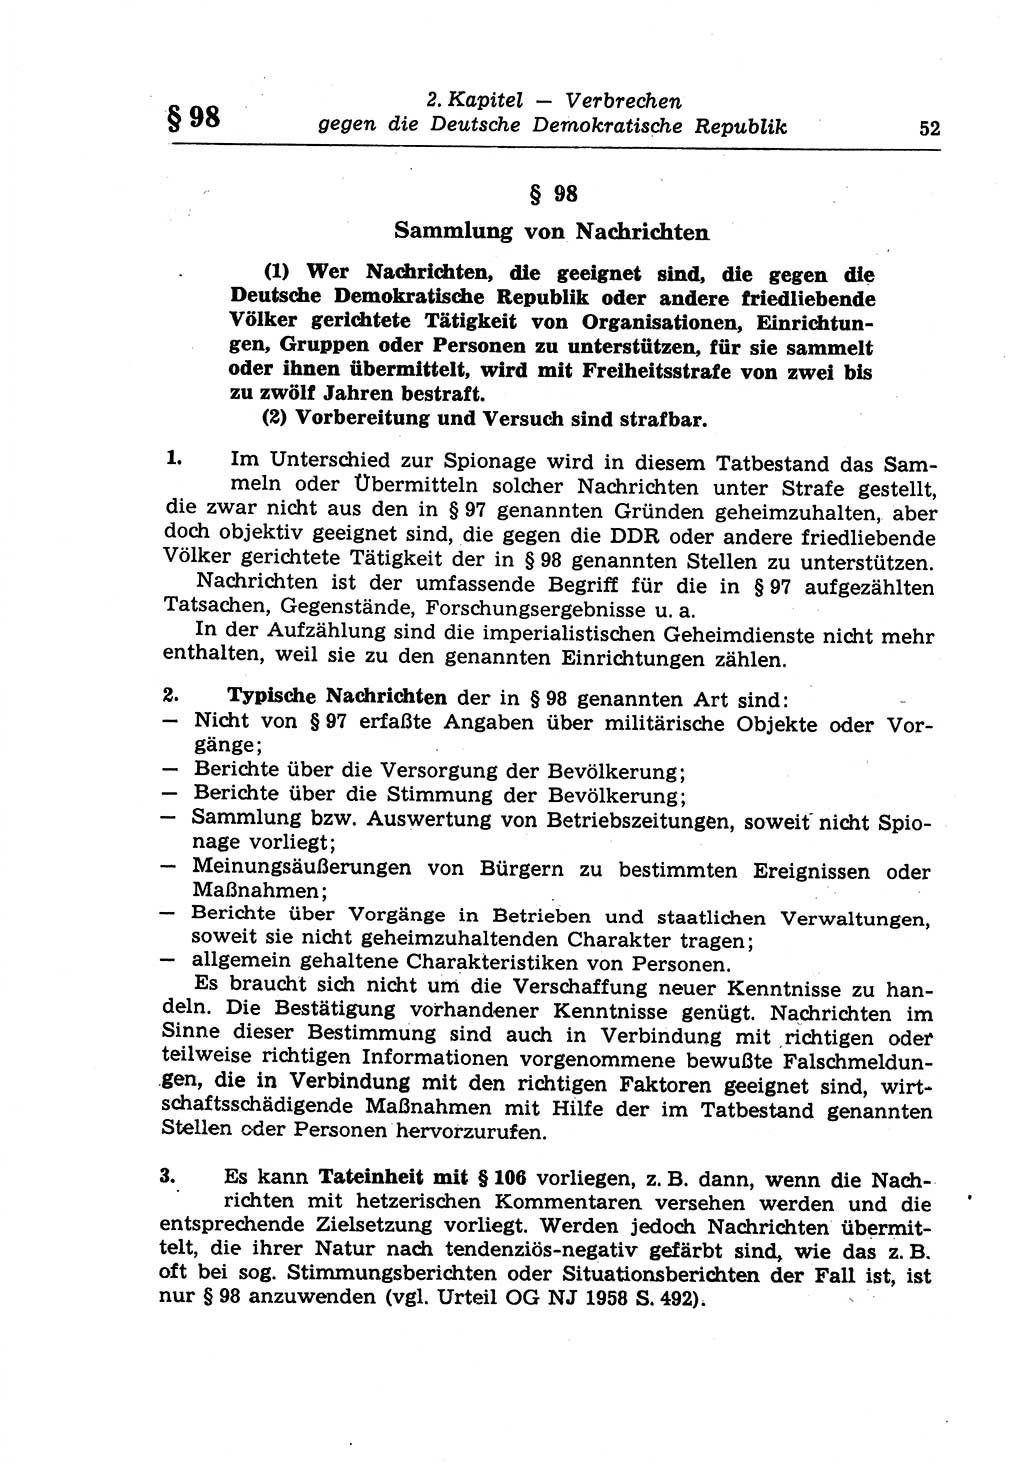 Strafrecht der Deutschen Demokratischen Republik (DDR), Lehrkommentar zum Strafgesetzbuch (StGB), Besonderer Teil 1970, Seite 52 (Strafr. DDR Lehrkomm. StGB BT 1970, S. 52)